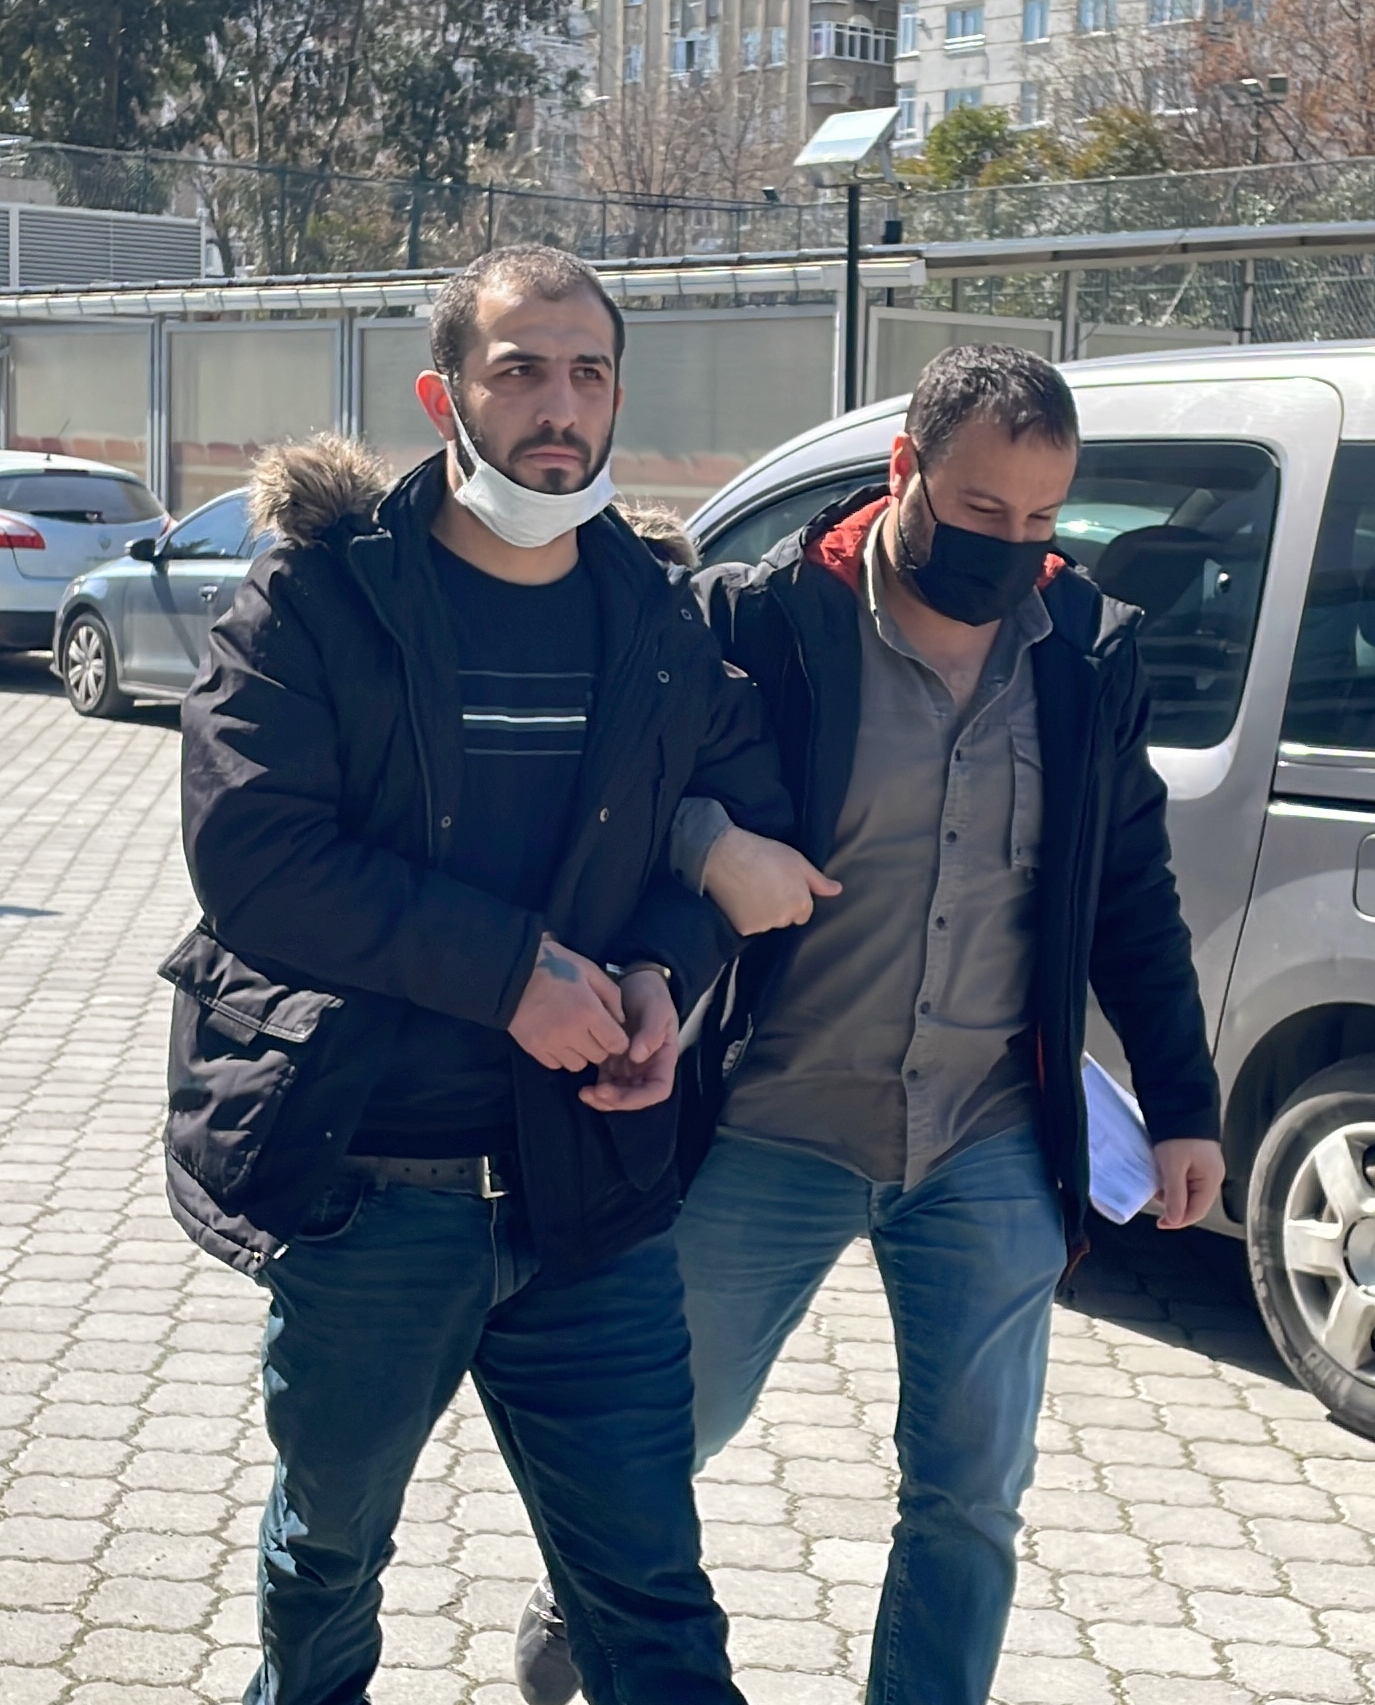 GÜNCELLEME – Samsun’da 3 kişinin yaralandığı silahlı çatışmayla ilgili 2 şüpheli tutuklandı